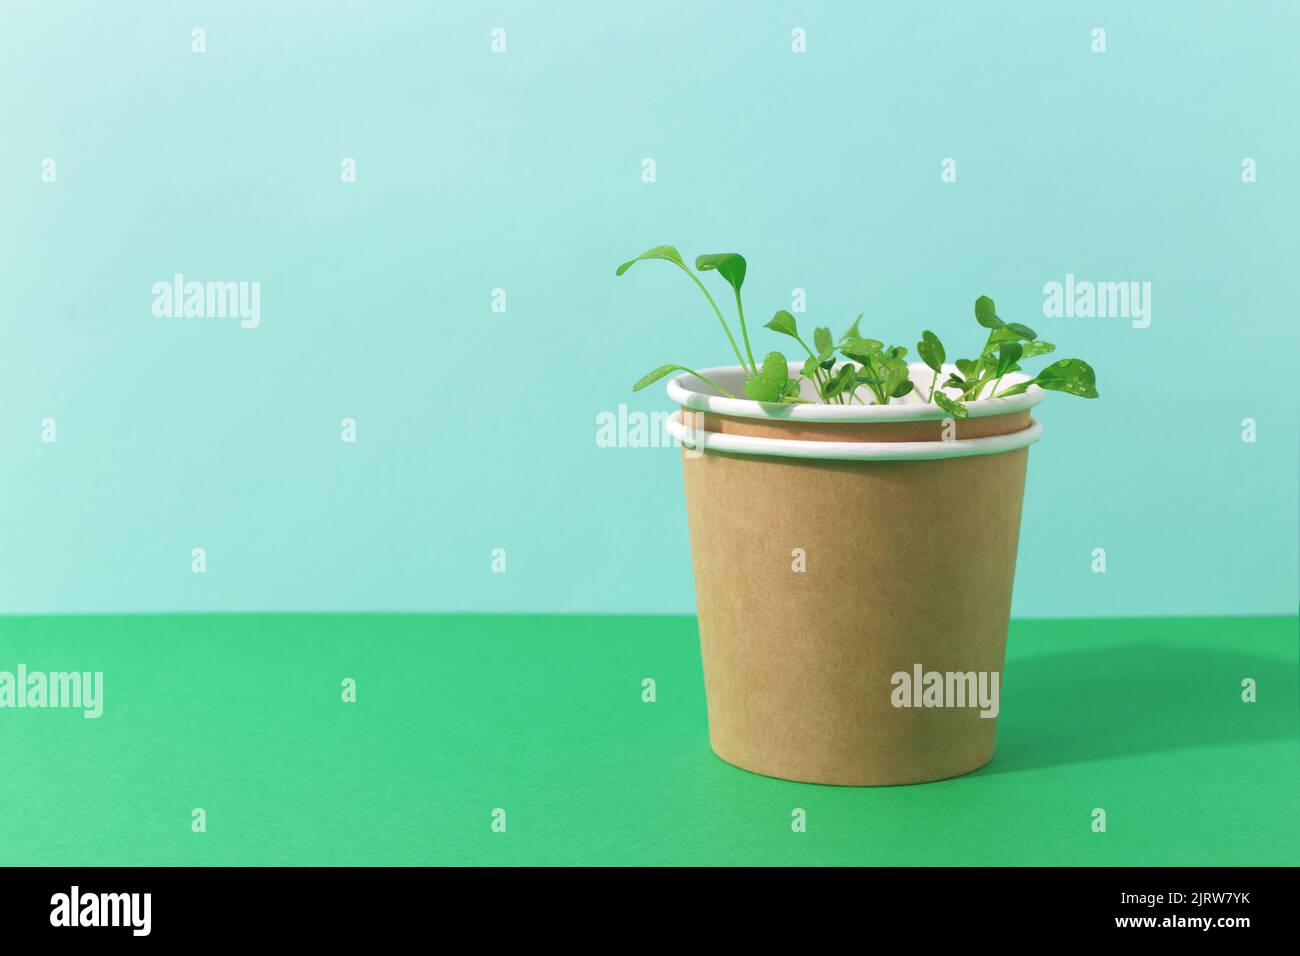 Grüne Rucola-Sämlinge, die in Papiertopf wachsen. Zweifarbiger blauer und grüner Hintergrund mit Kopierbereich. Gärtnern oder Anbau von Lebensmitteln Konzept, Studio Schuss. Stockfoto